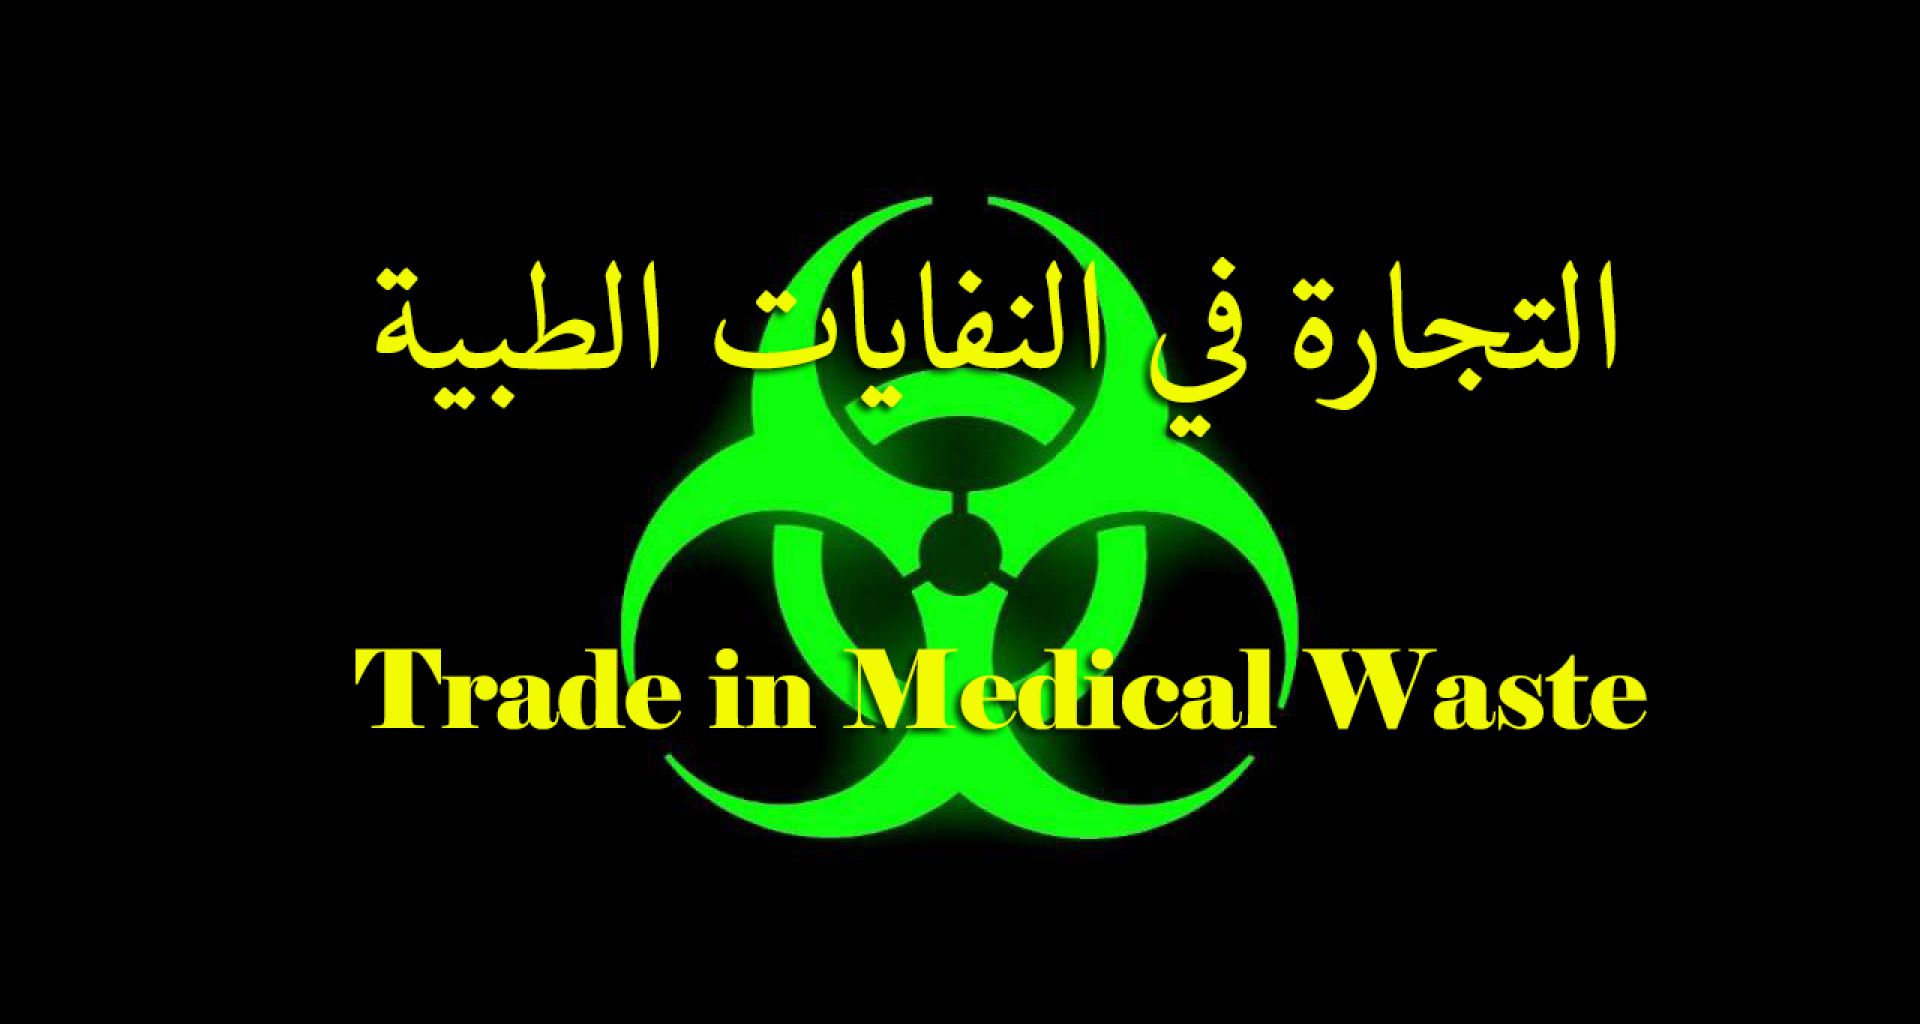 التجارة بالنفايات الطبية